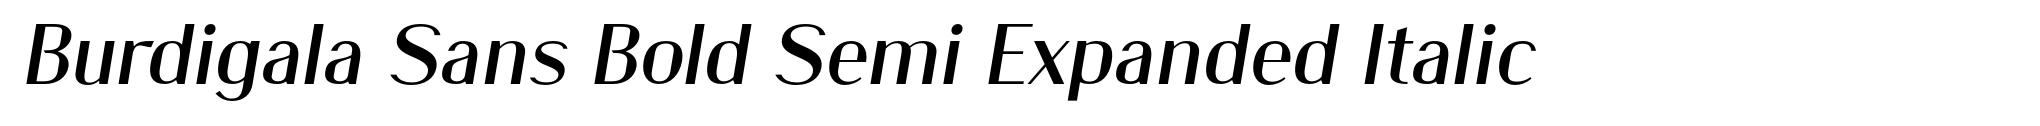 Burdigala Sans Bold Semi Expanded Italic image